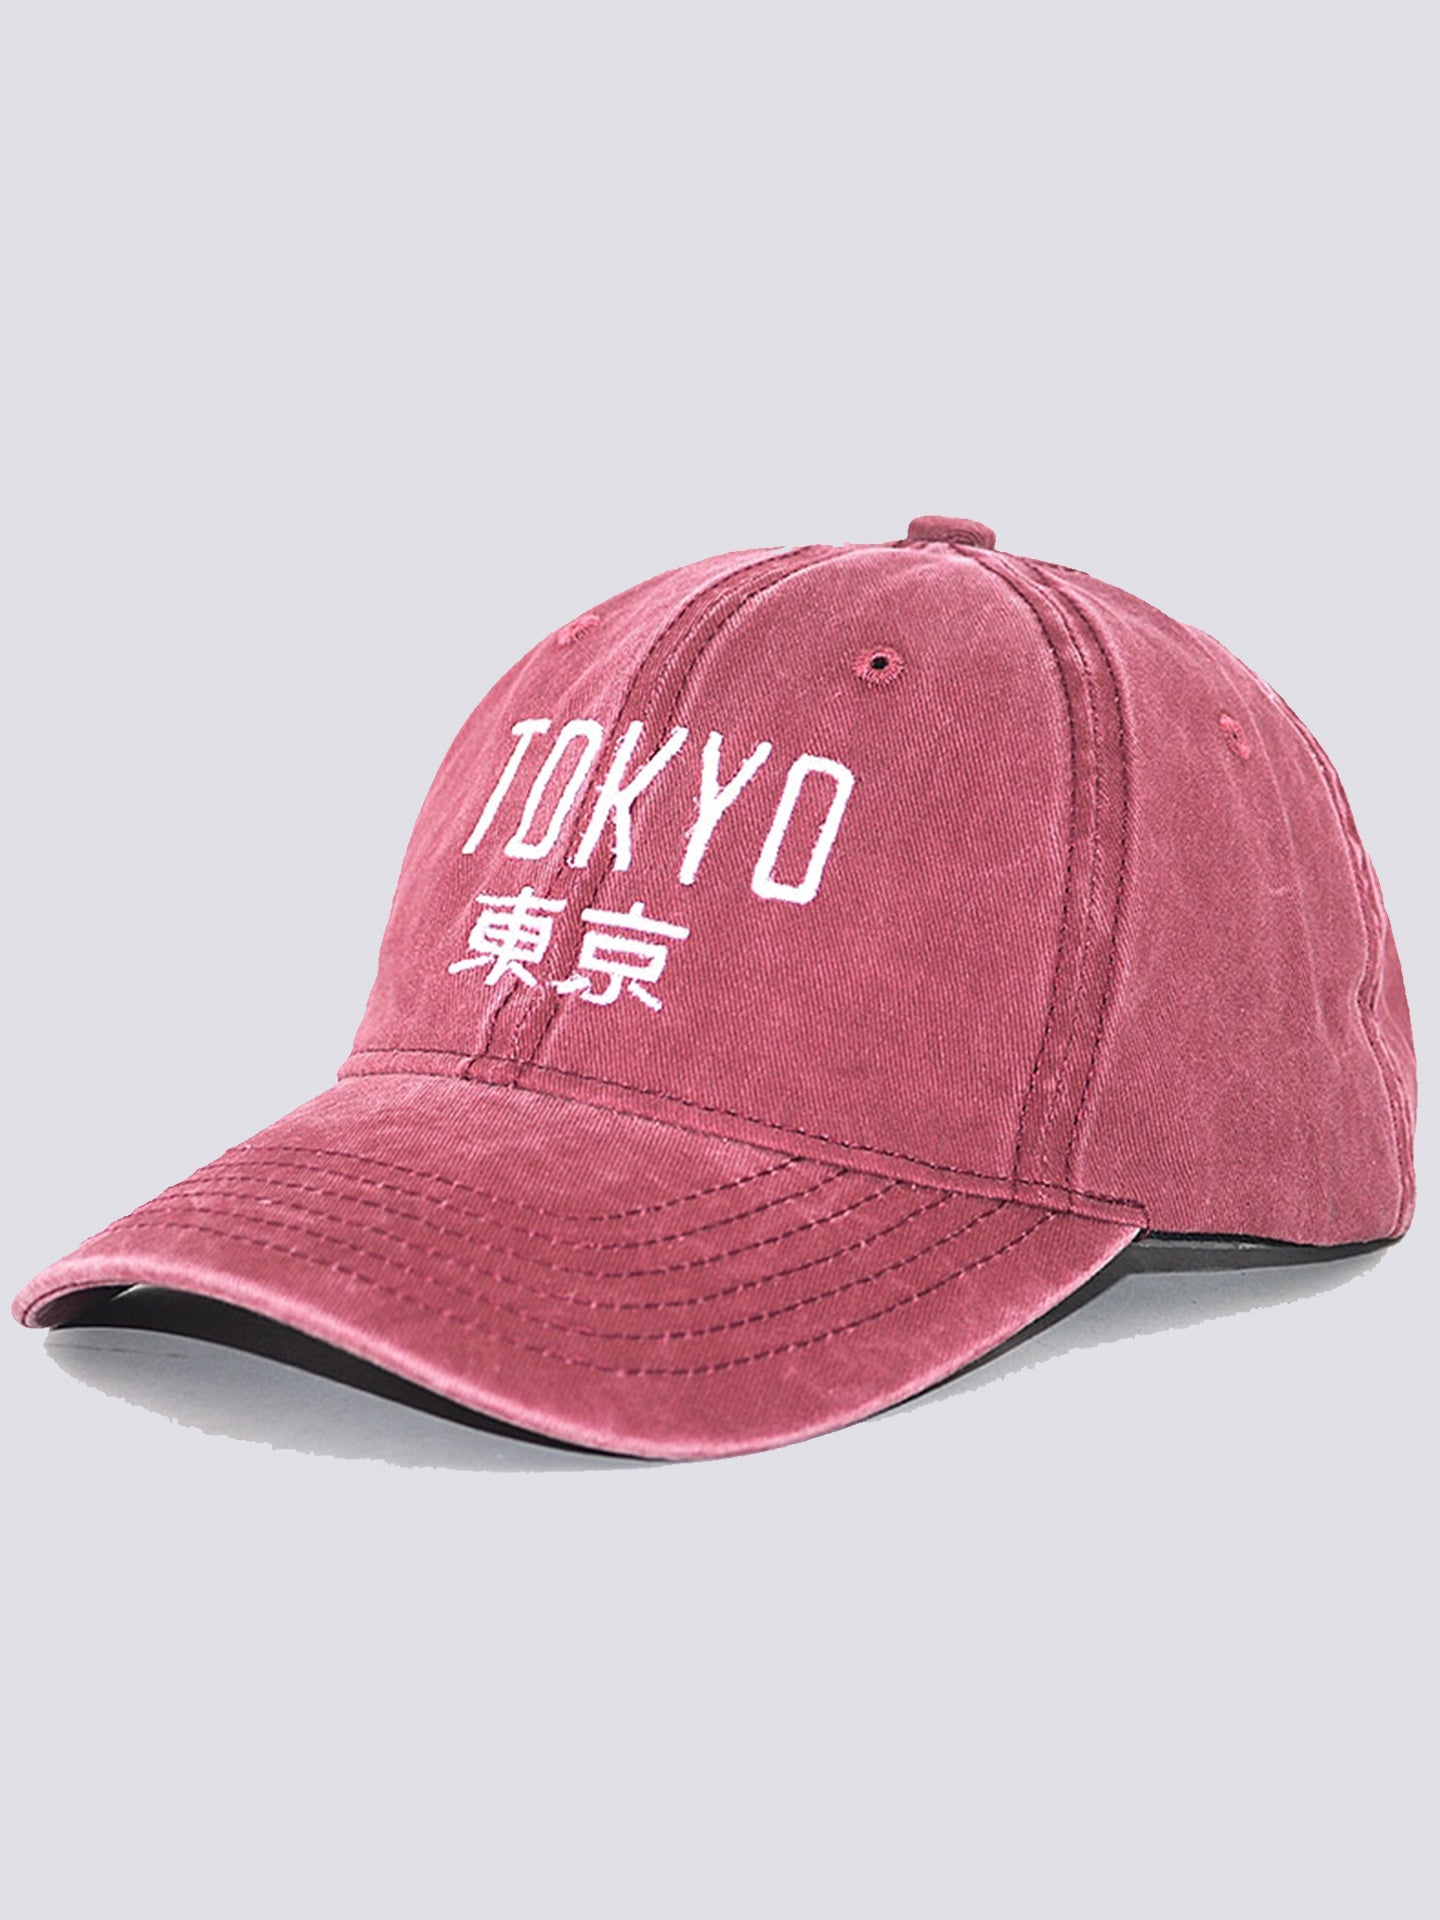 Tokyo Vintage Cap - Red